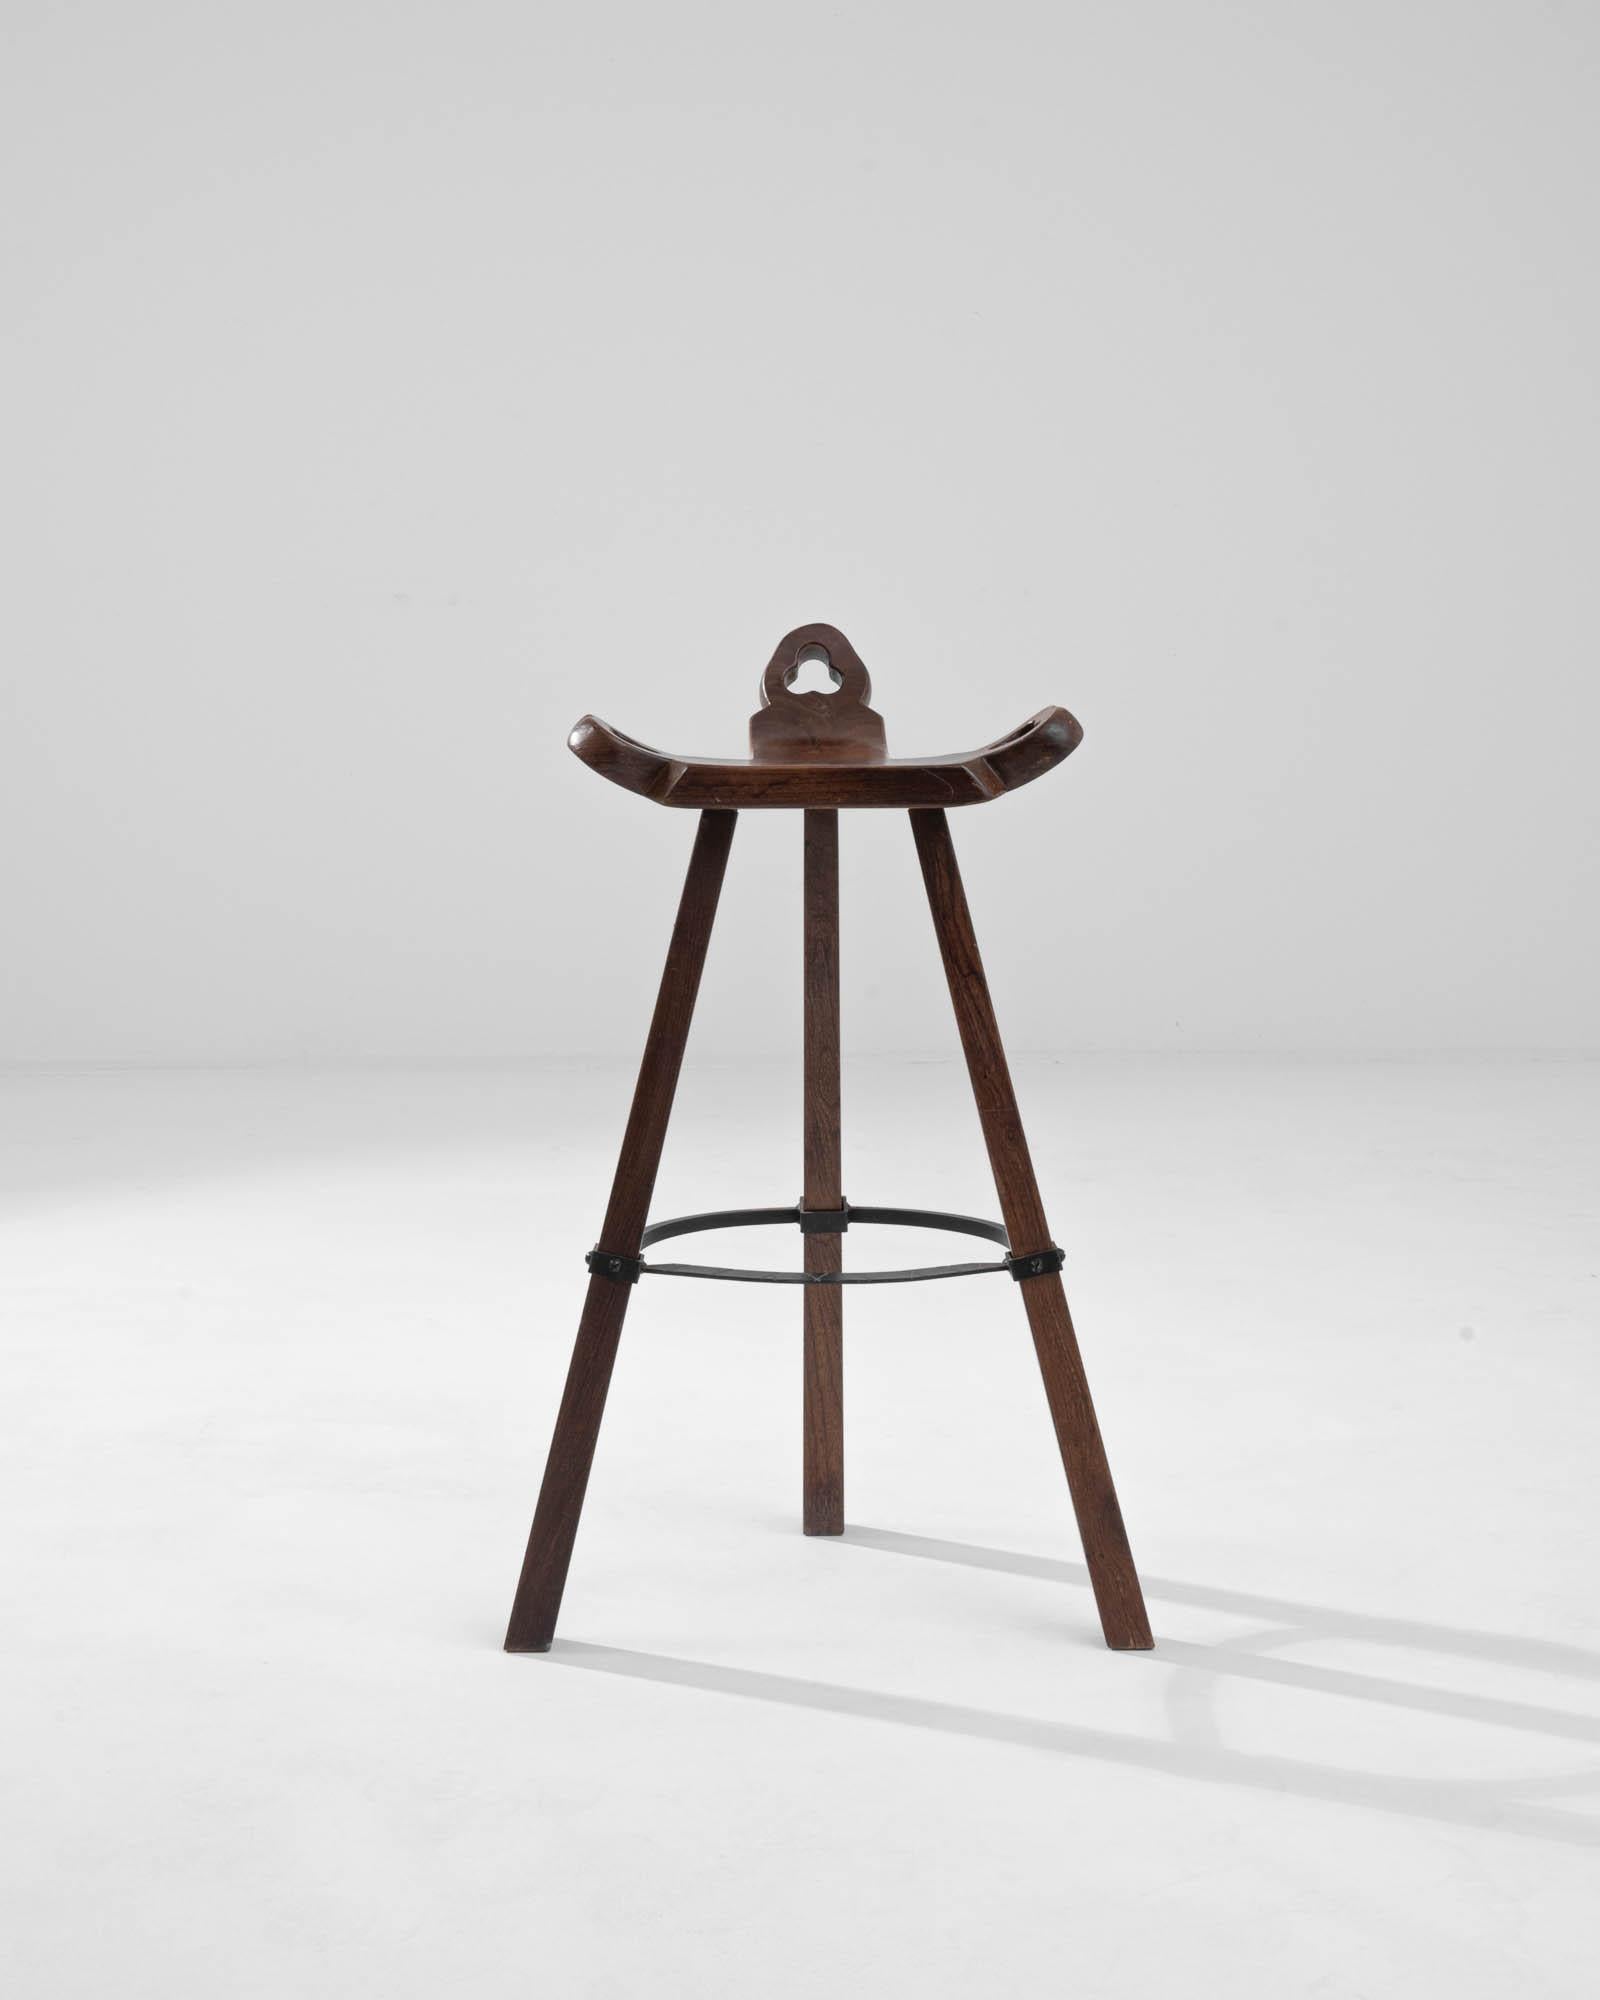 Ein Holzhocker aus dem Frankreich des 19. Jahrhunderts. Von der dreieckig geformten Sitzfläche dieses kuriosen Barhockers geht ein Dreibein aus sich sanft verjüngenden Beinen aus. Drei Schnitzereien, die drei Kreise enthalten, lassen auf rätselhafte